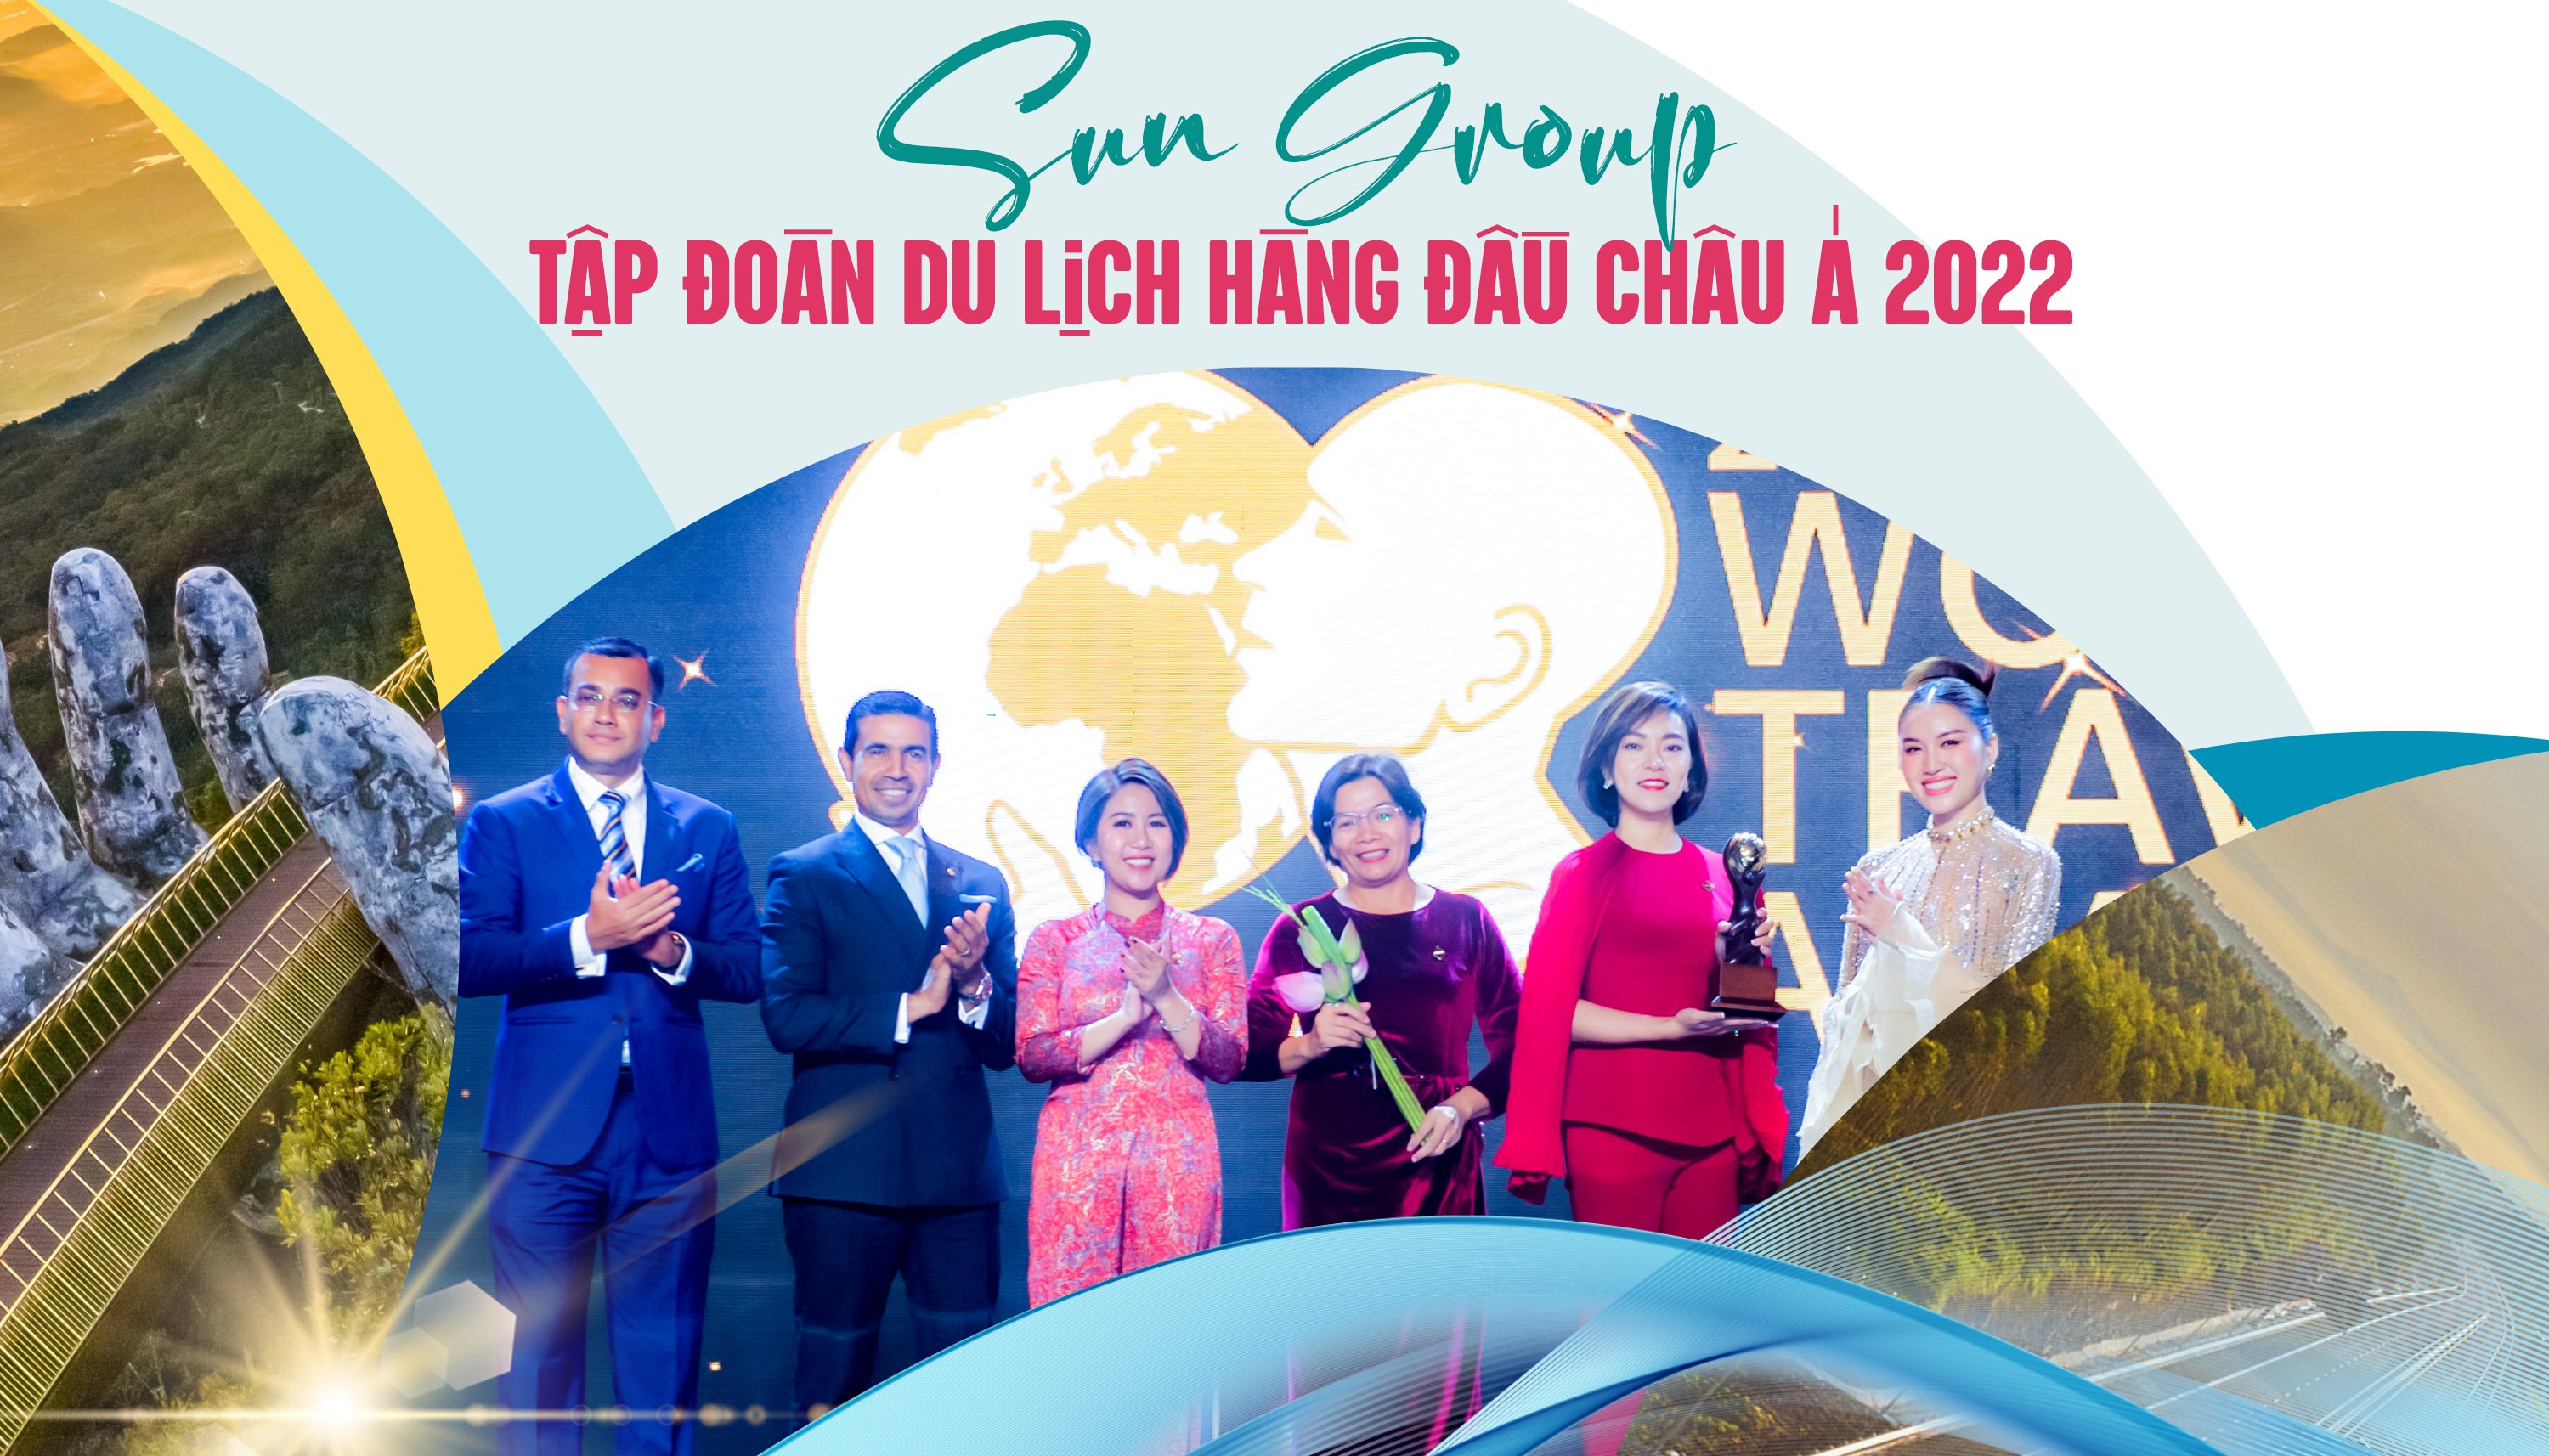 Sun Group được WTA vinh danh Tập đoàn du lịch hàng đầu Châu Á 2022